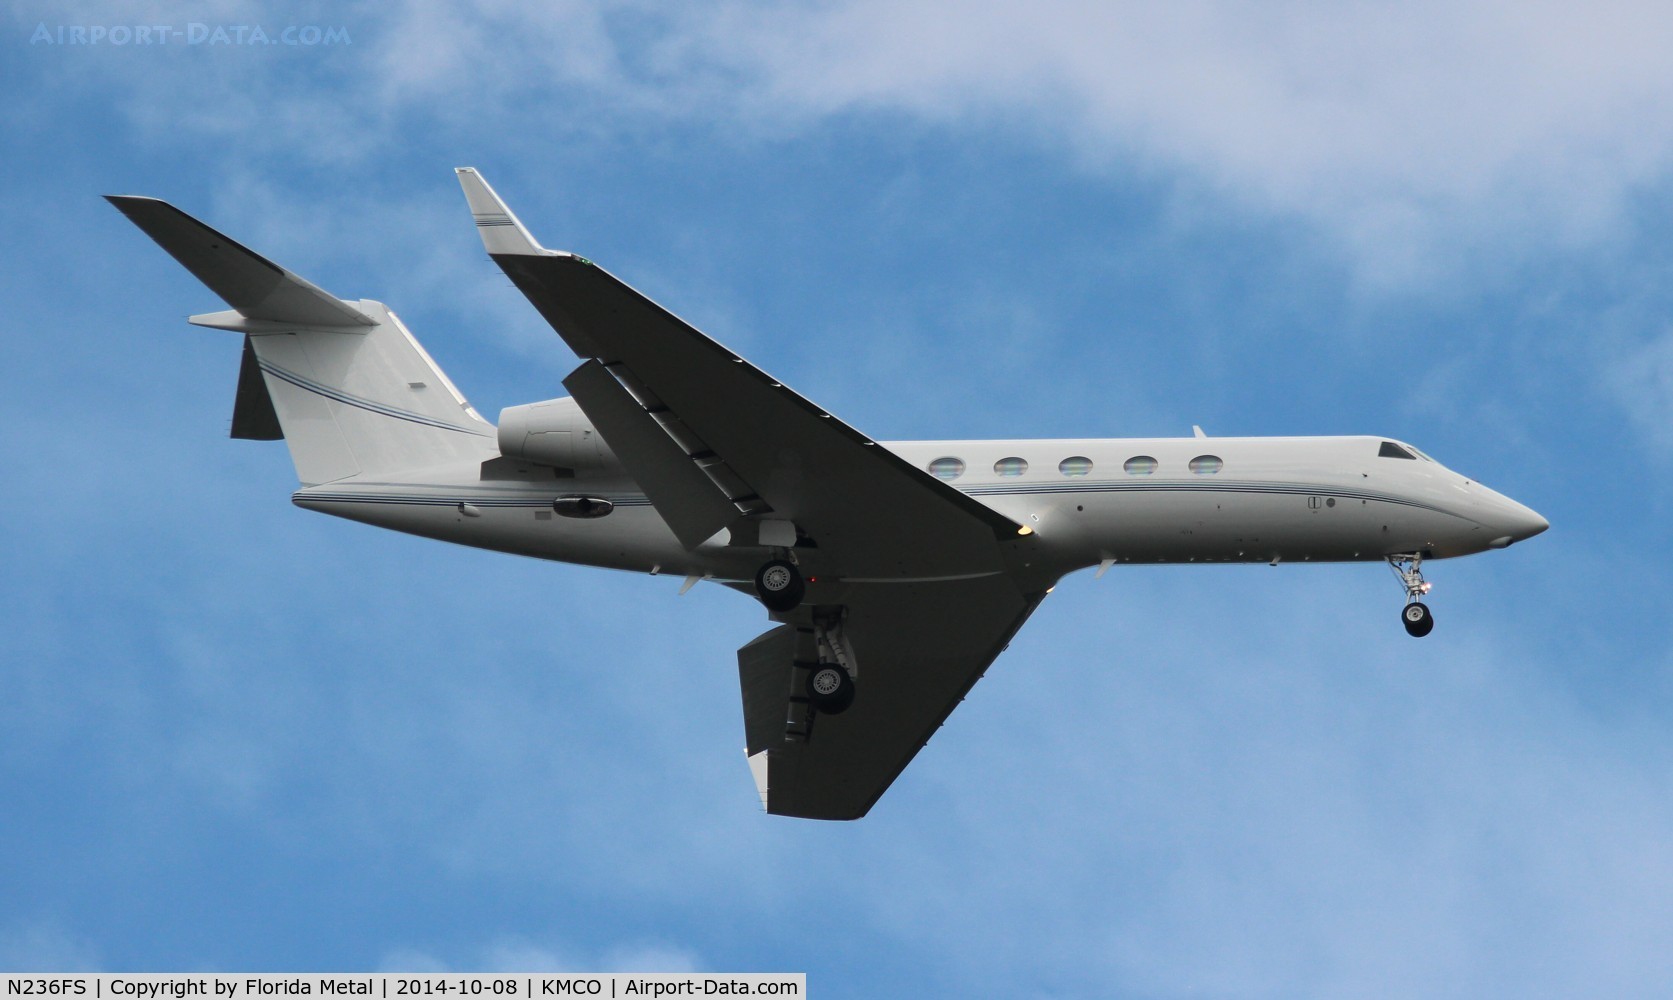 N236FS, 2011 Gulfstream Aerospace GIV-X (G450) C/N 4236, G450 zx